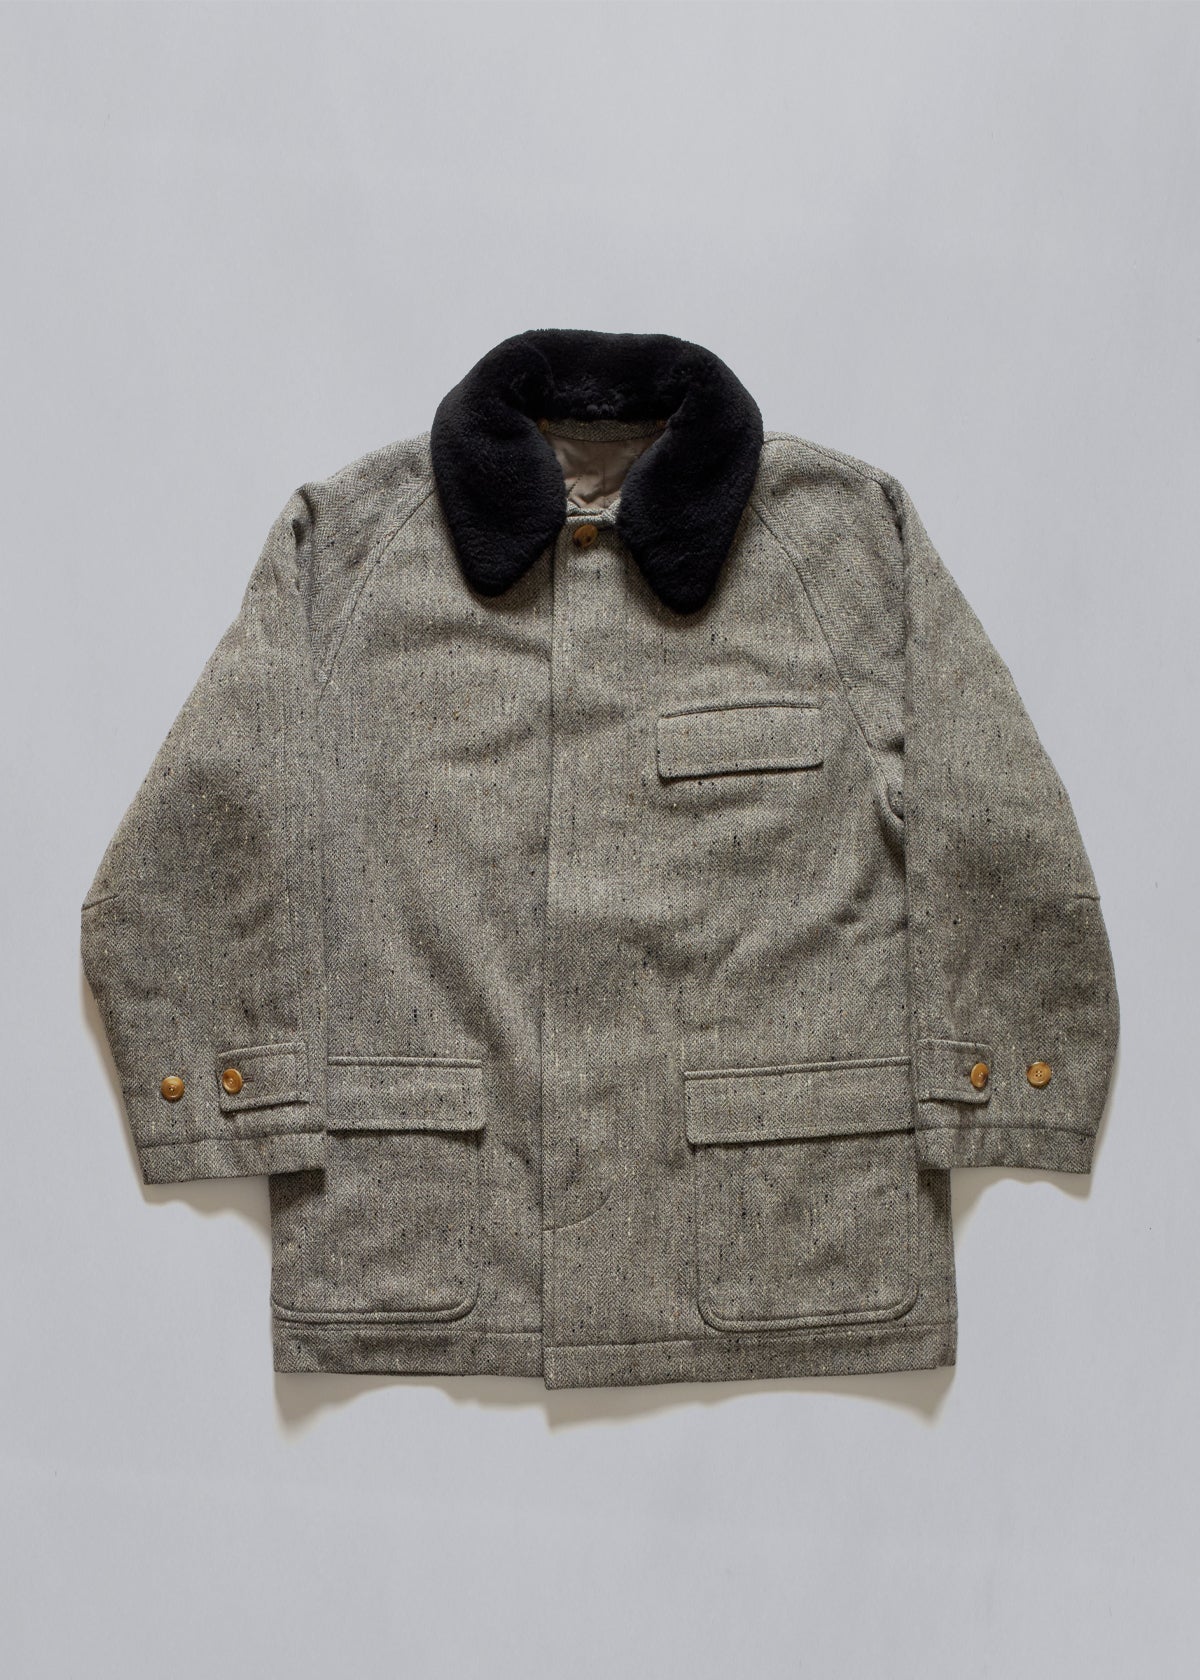 Herringbone Tweed Coat 1980's - Medium - The Archivist Store